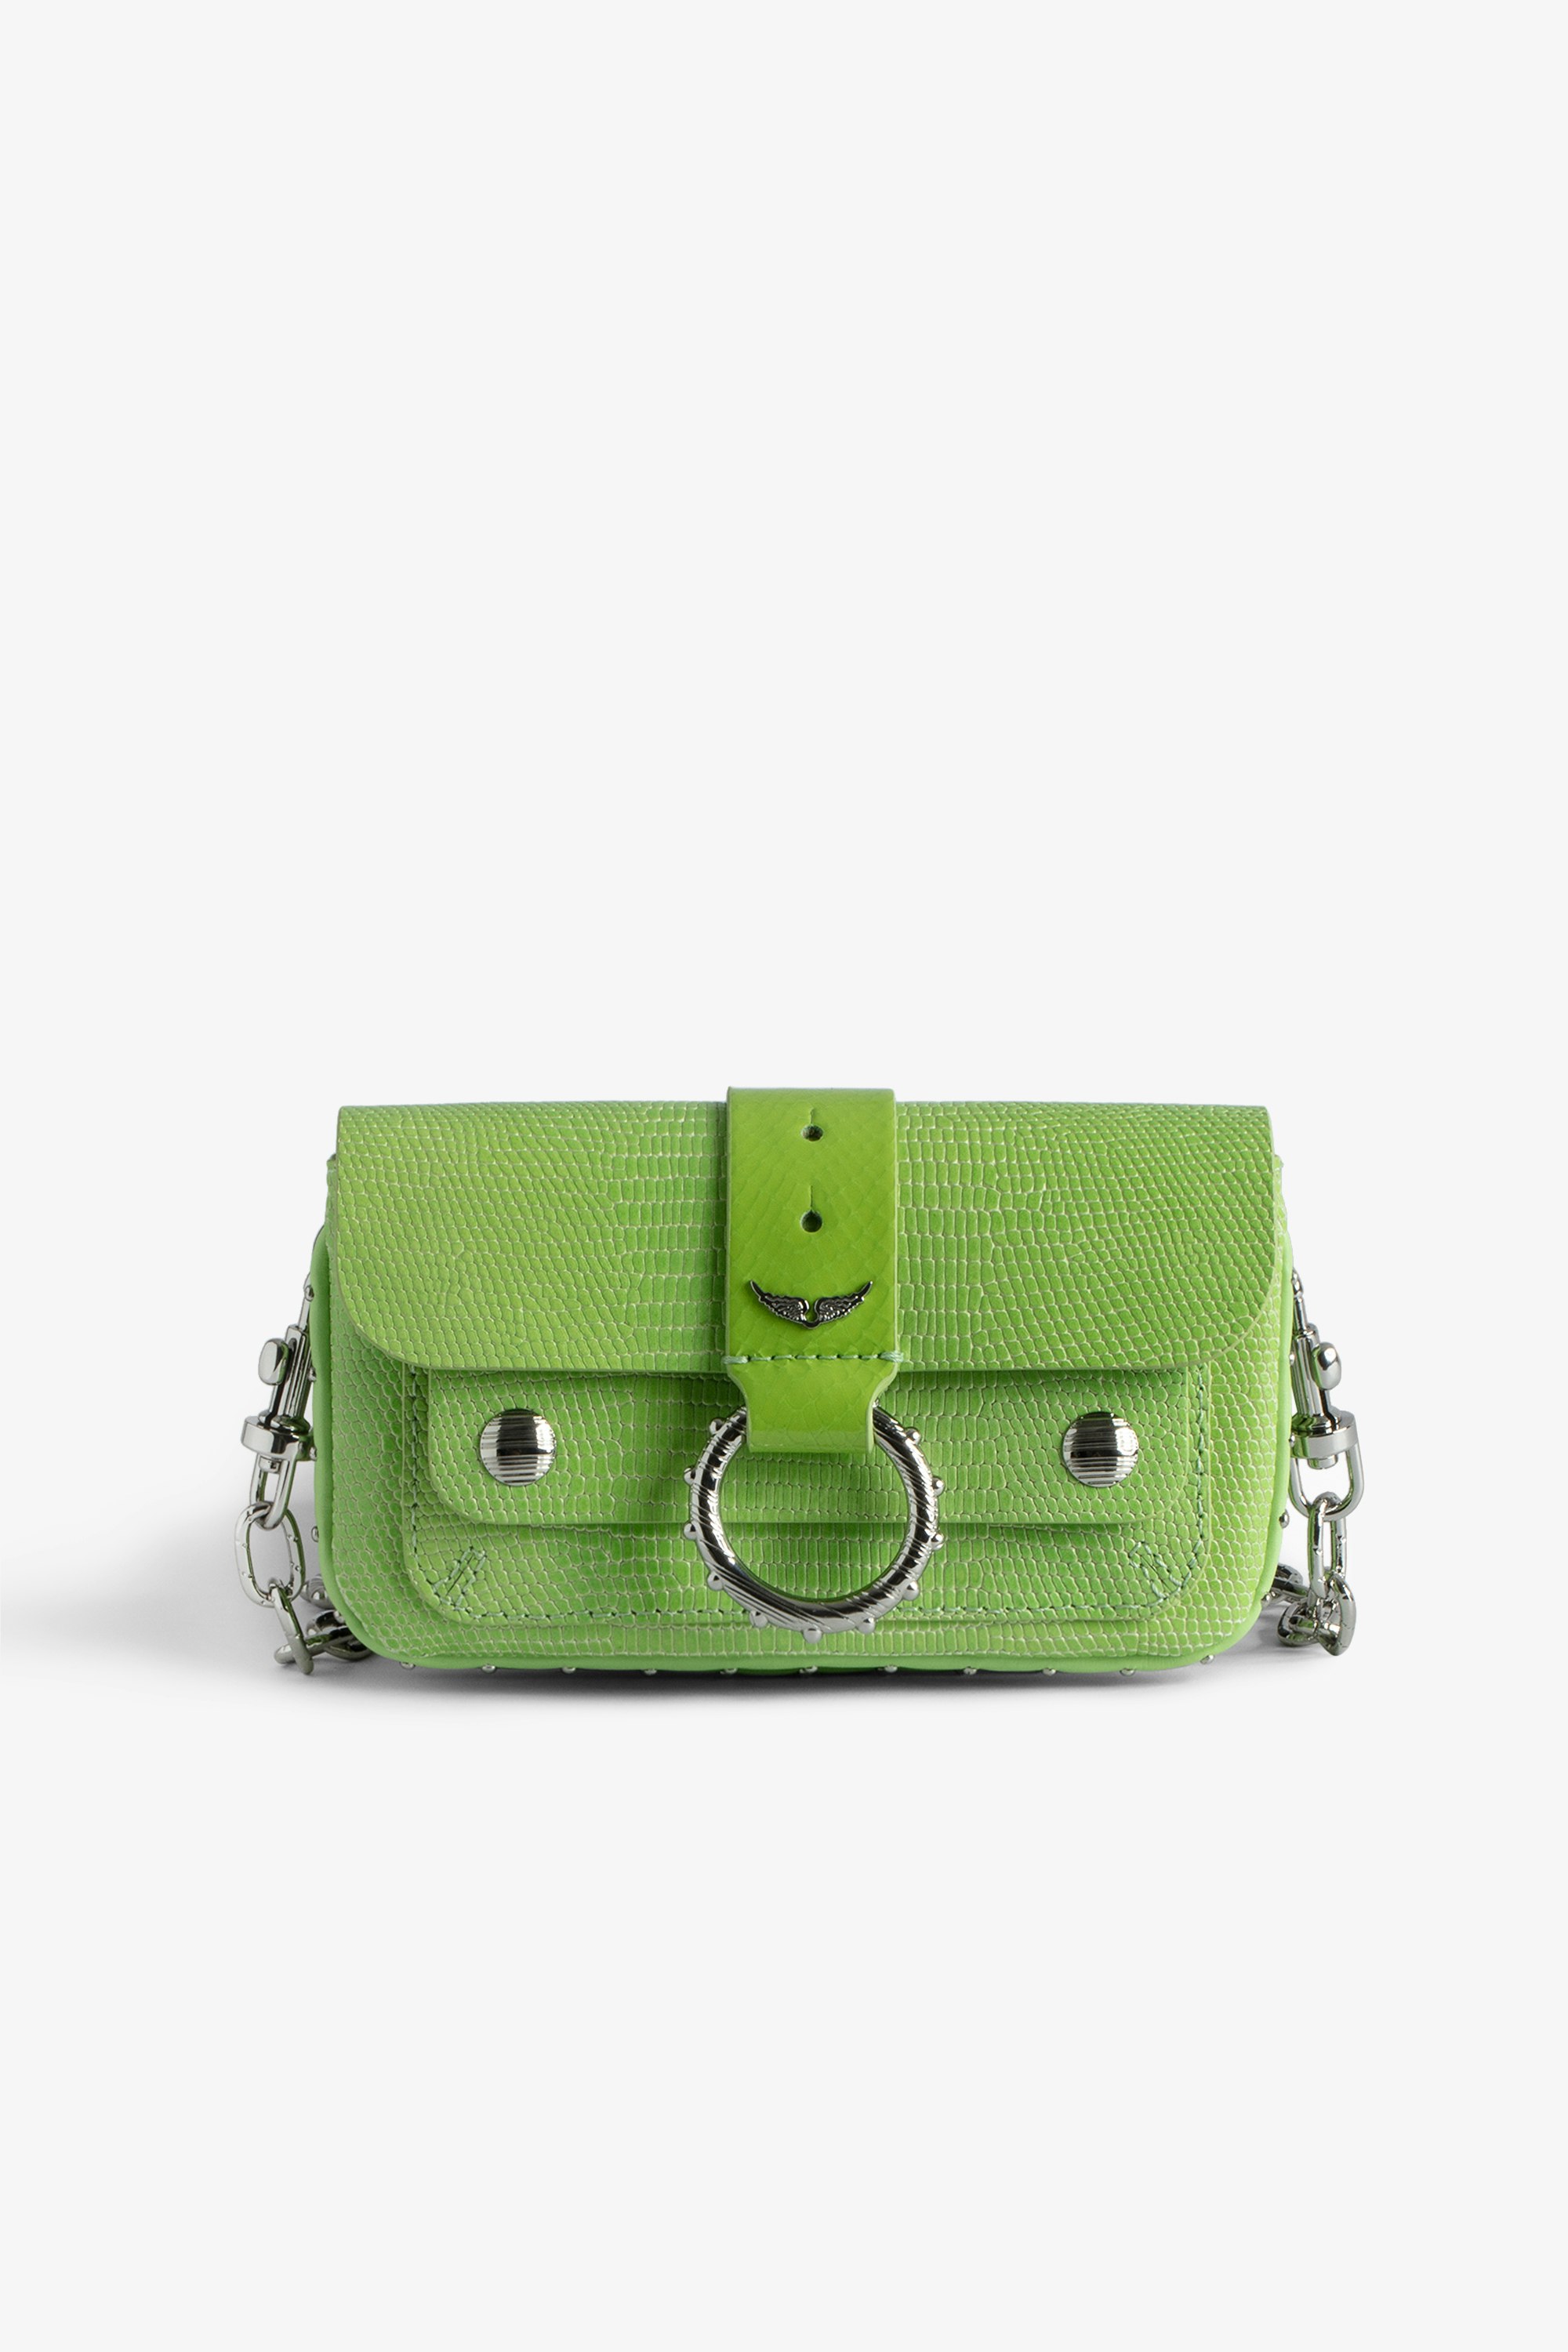 Borsa Kate Wallet Glossy Wild - Mini borsa in pelle lucida verde effetto iguana con catena in metallo da donna.